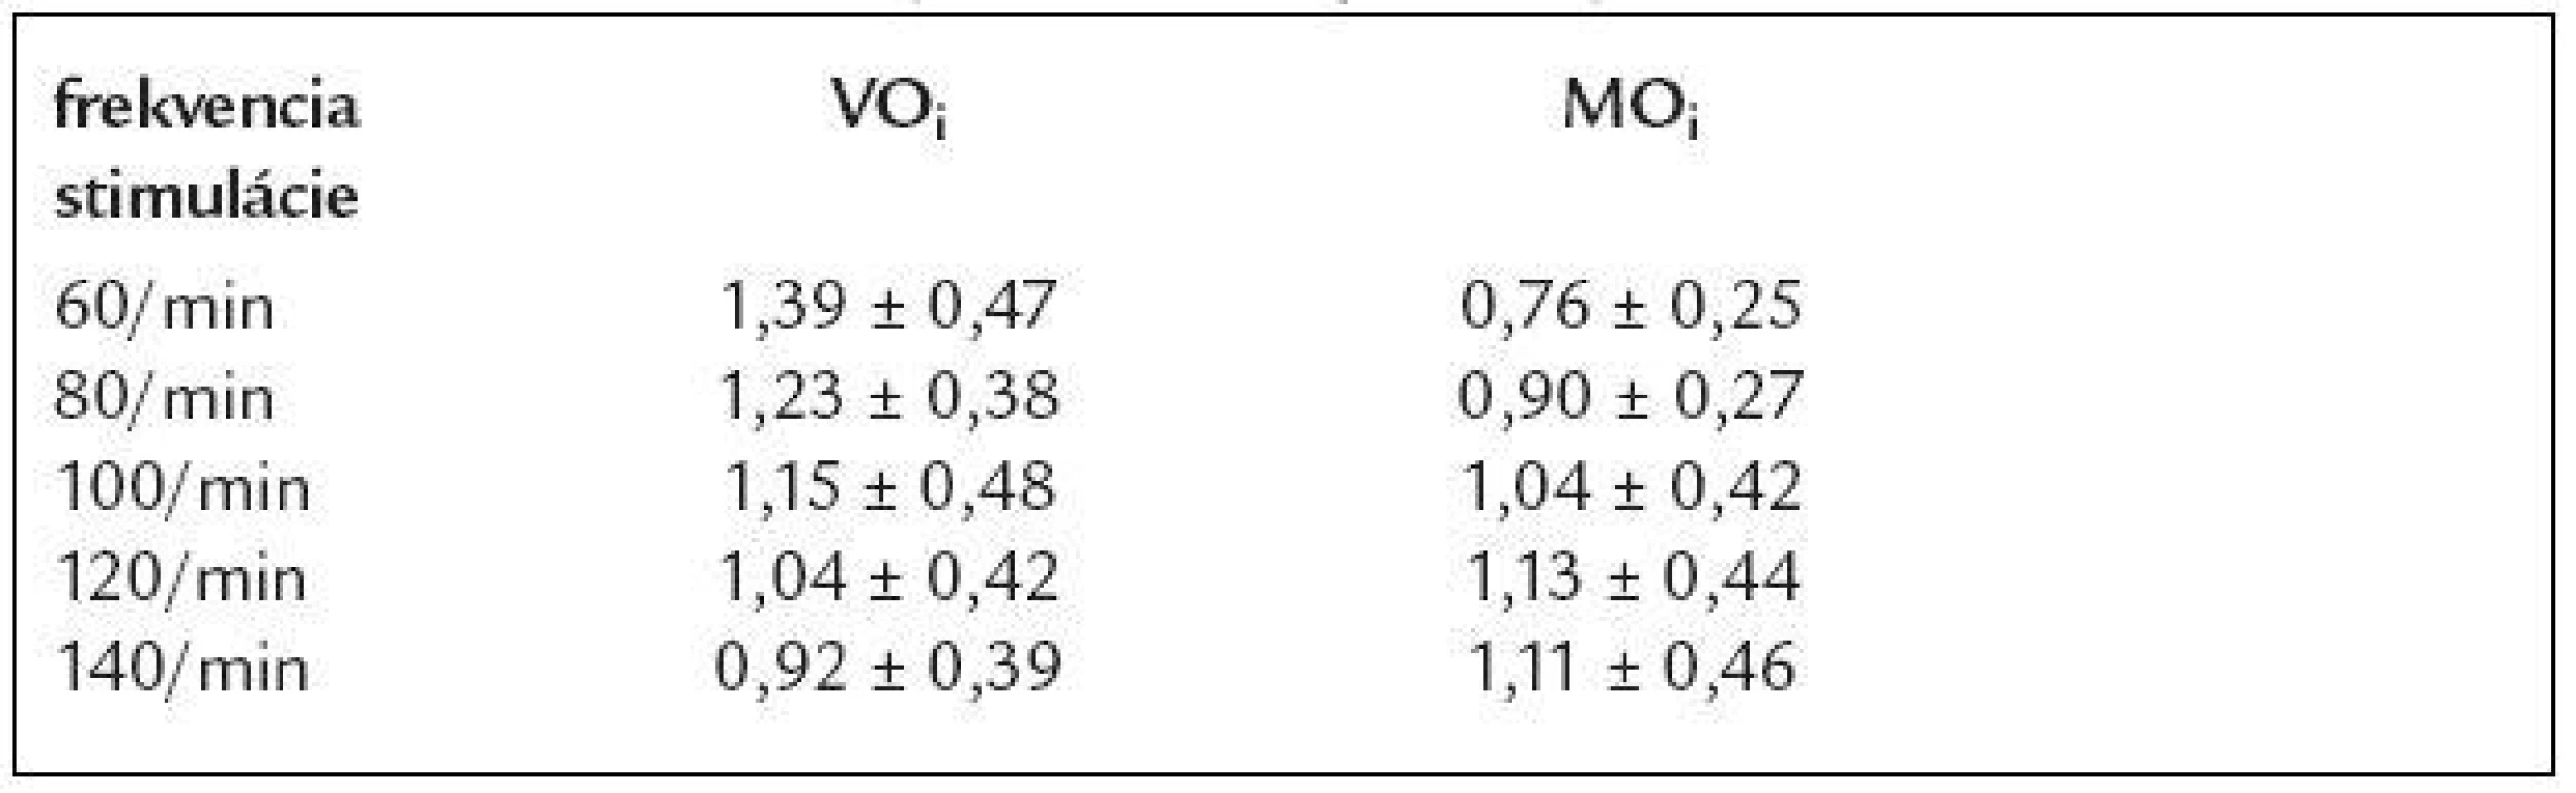 Priemerné hodnoty VO<sub>i</sub> a MO<sub>i</sub>pri rôznych frekvenciach stimulácie.